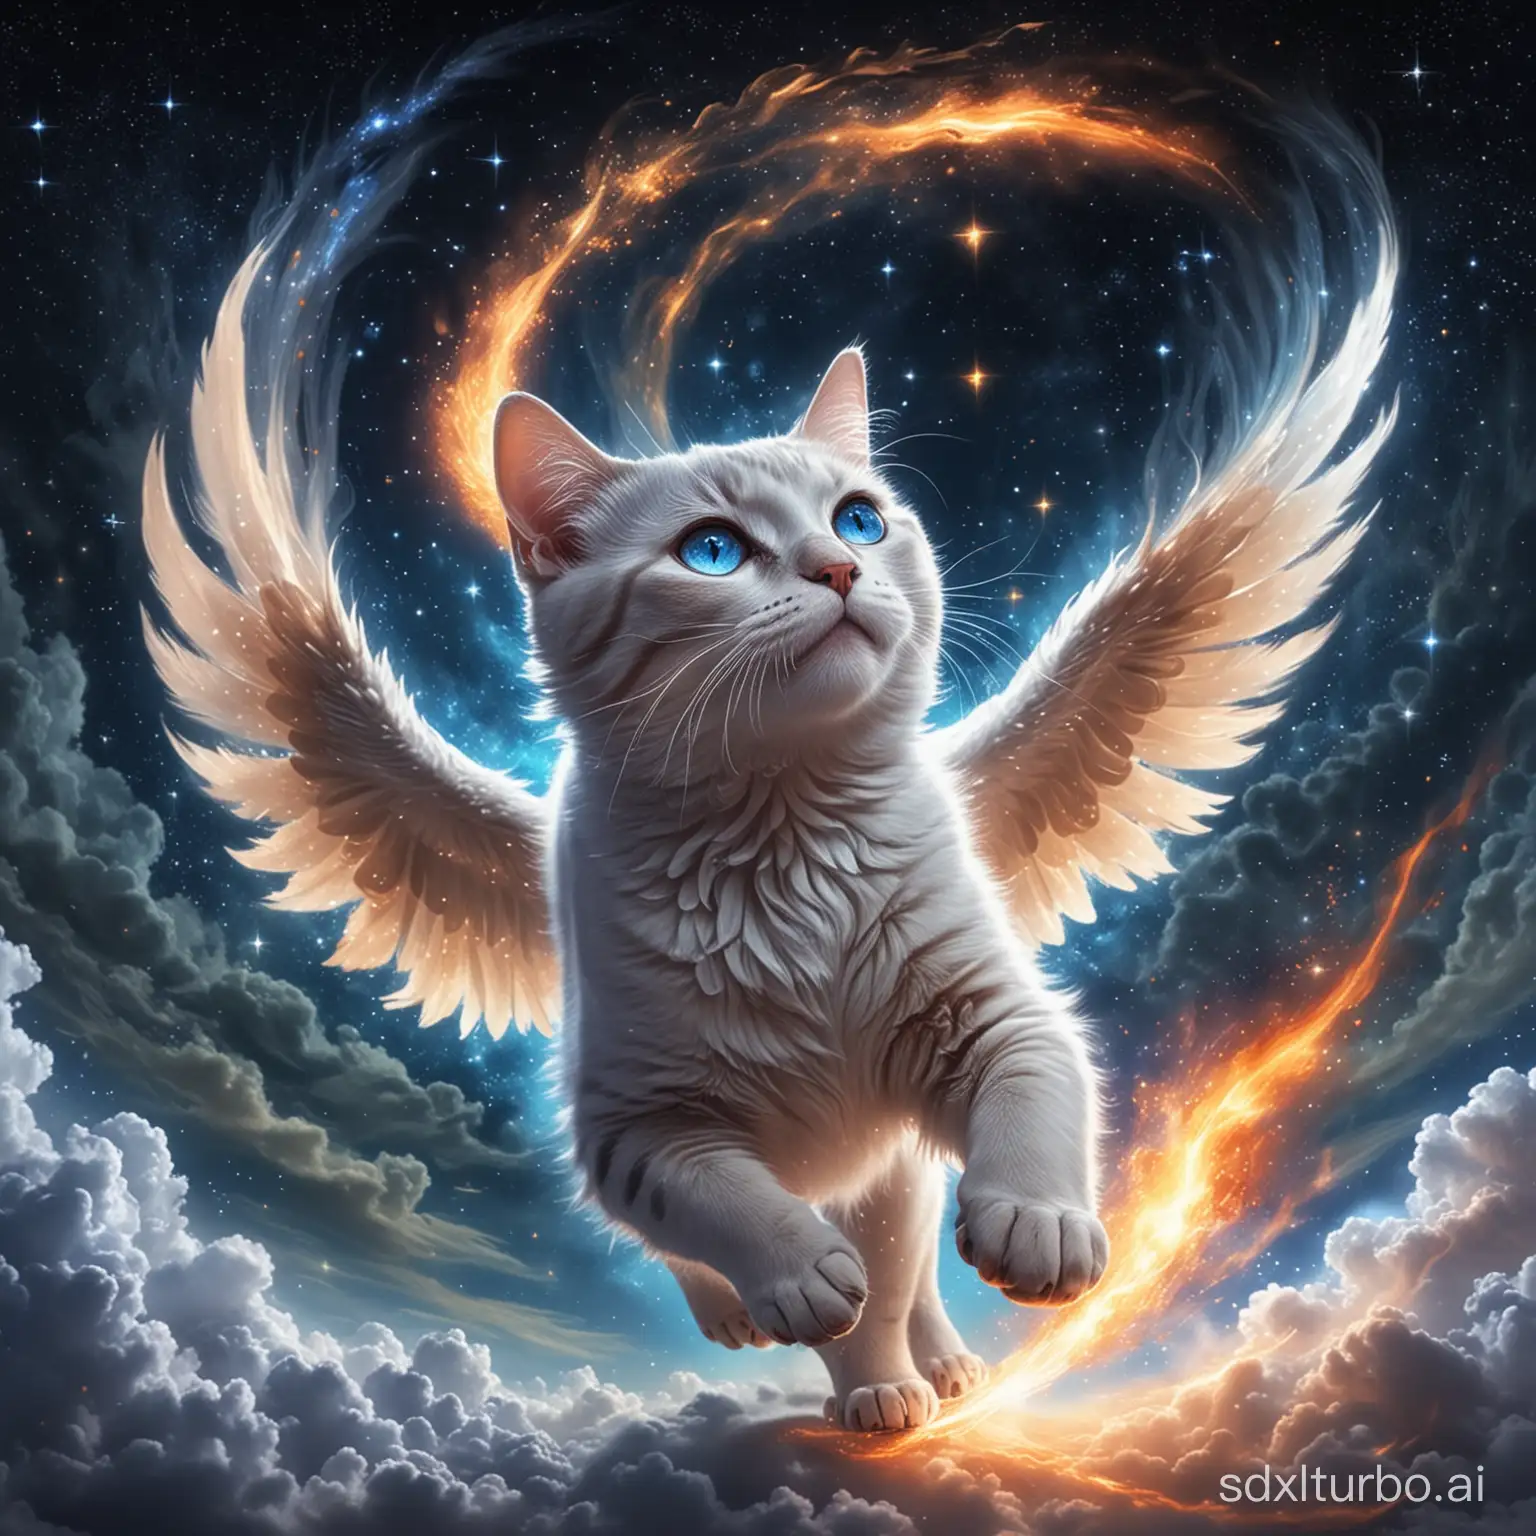 一只猫长着一翅膀，它在星空中奔跑，头顶还长着一只独角，眼睛深蓝色，嘴里喷着火，浑身像水晶一样透明，